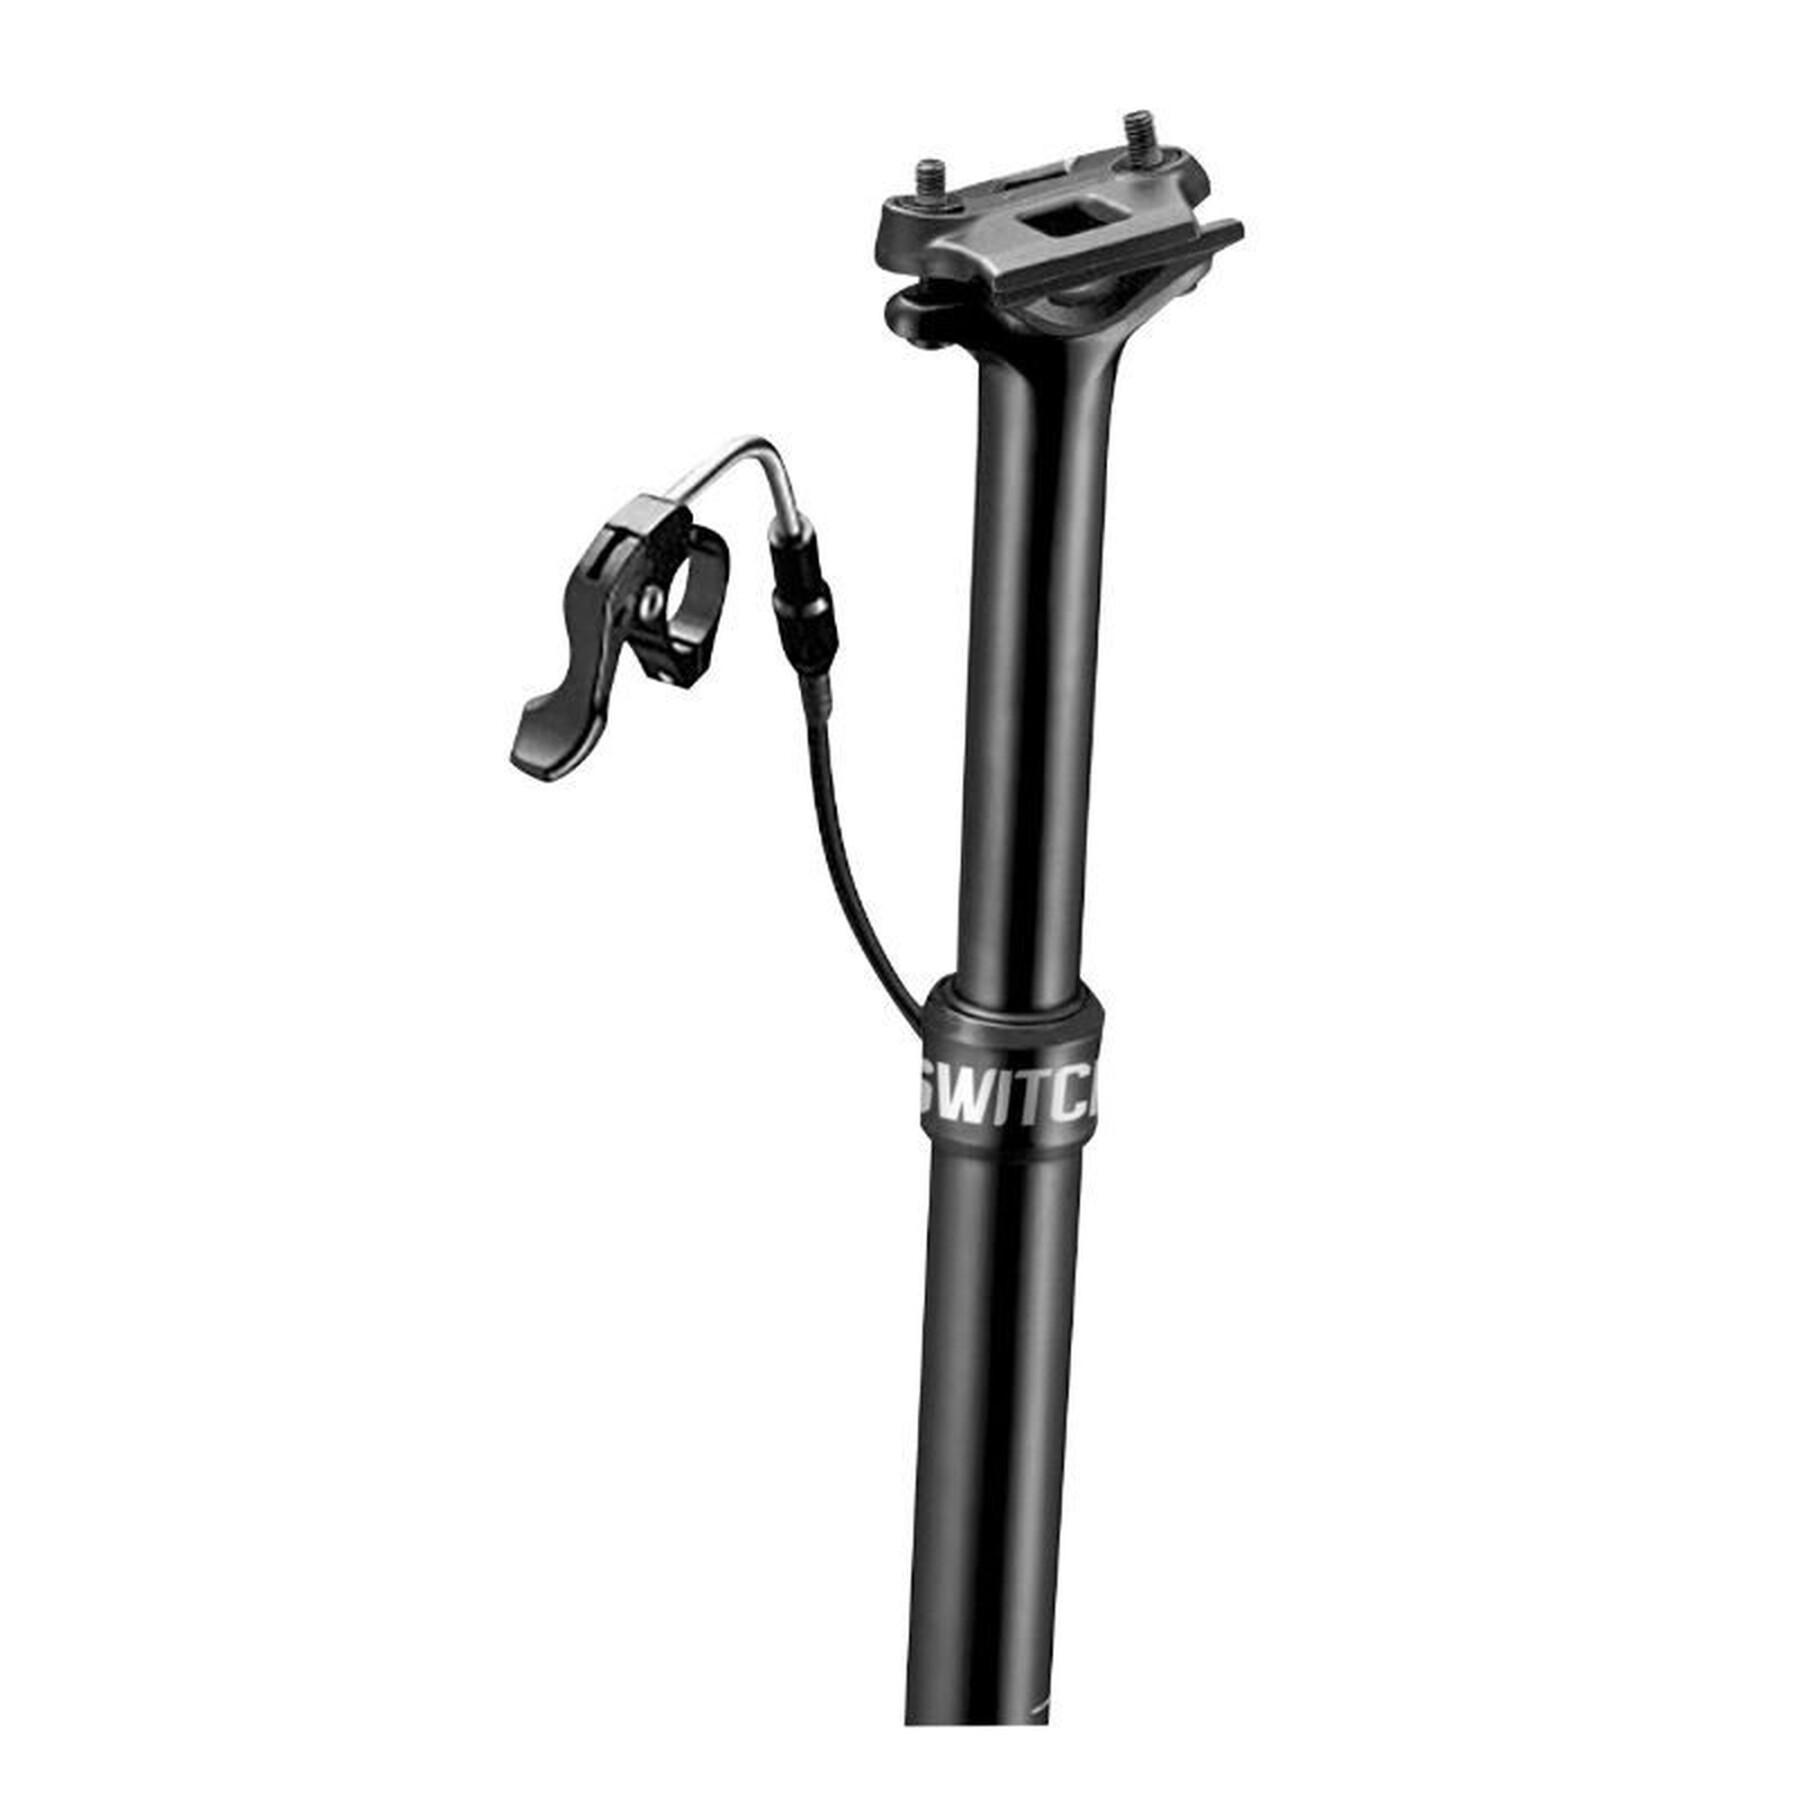 Tija de sillín ajustable para bicicleta de montaña con cable interno, fijación central de aluminio Gist Switch SW-80